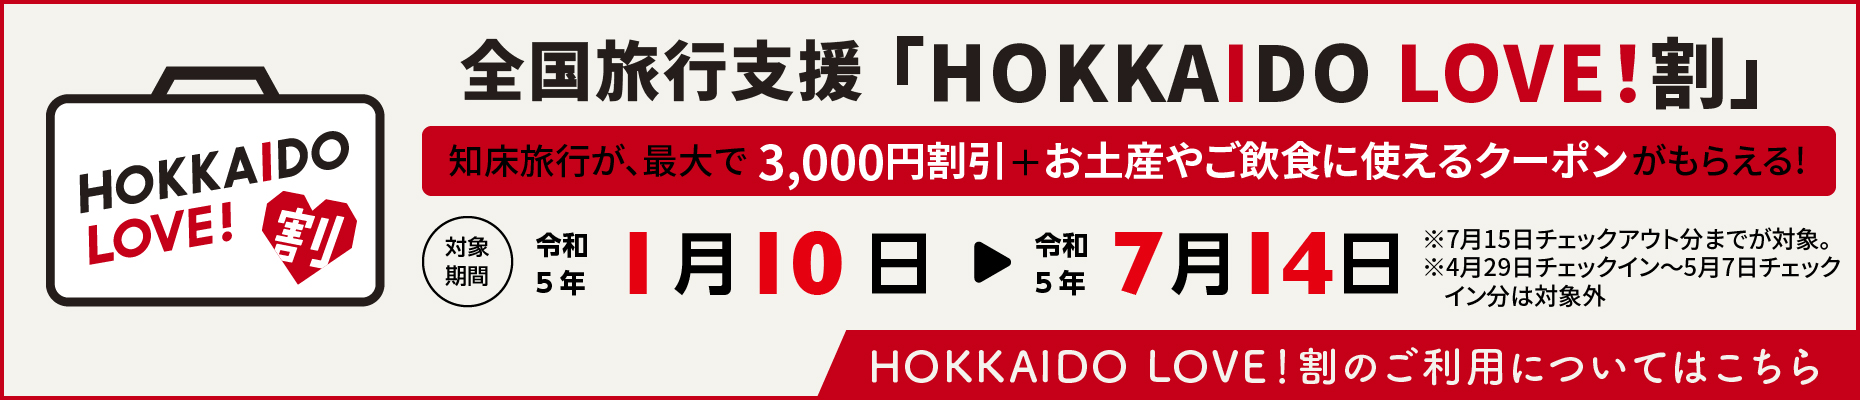 知床旅行が、最大で5,000円割引+2,000円のクーポンがもらえる「HOKKAIDO LOVE！割」。 対象期間令和4年3月22日から令和4年9月30日までの利用分